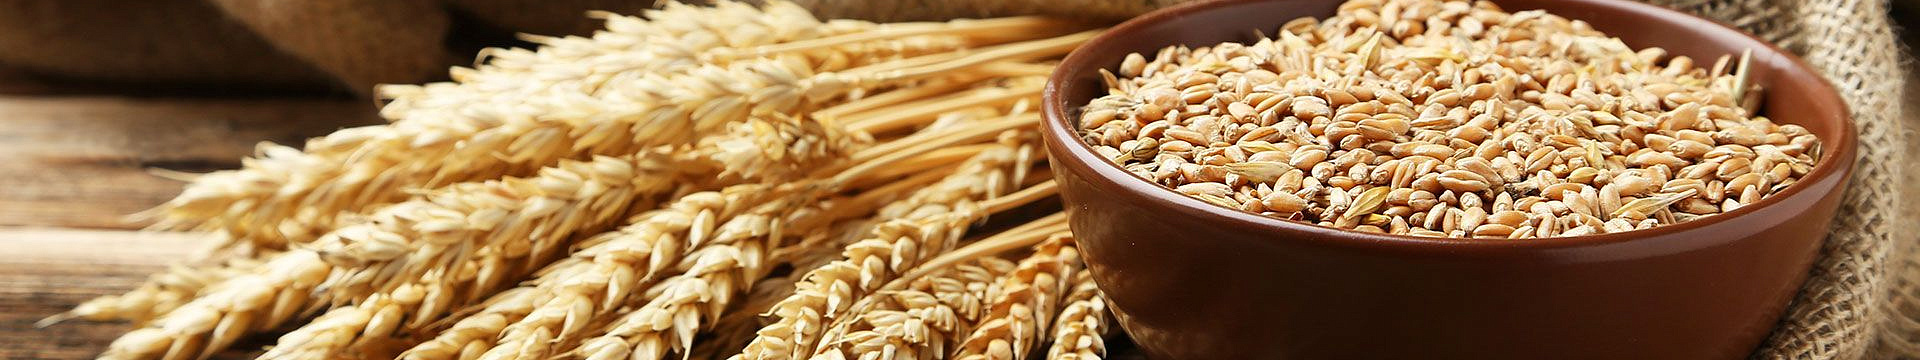 История появления пшеницы